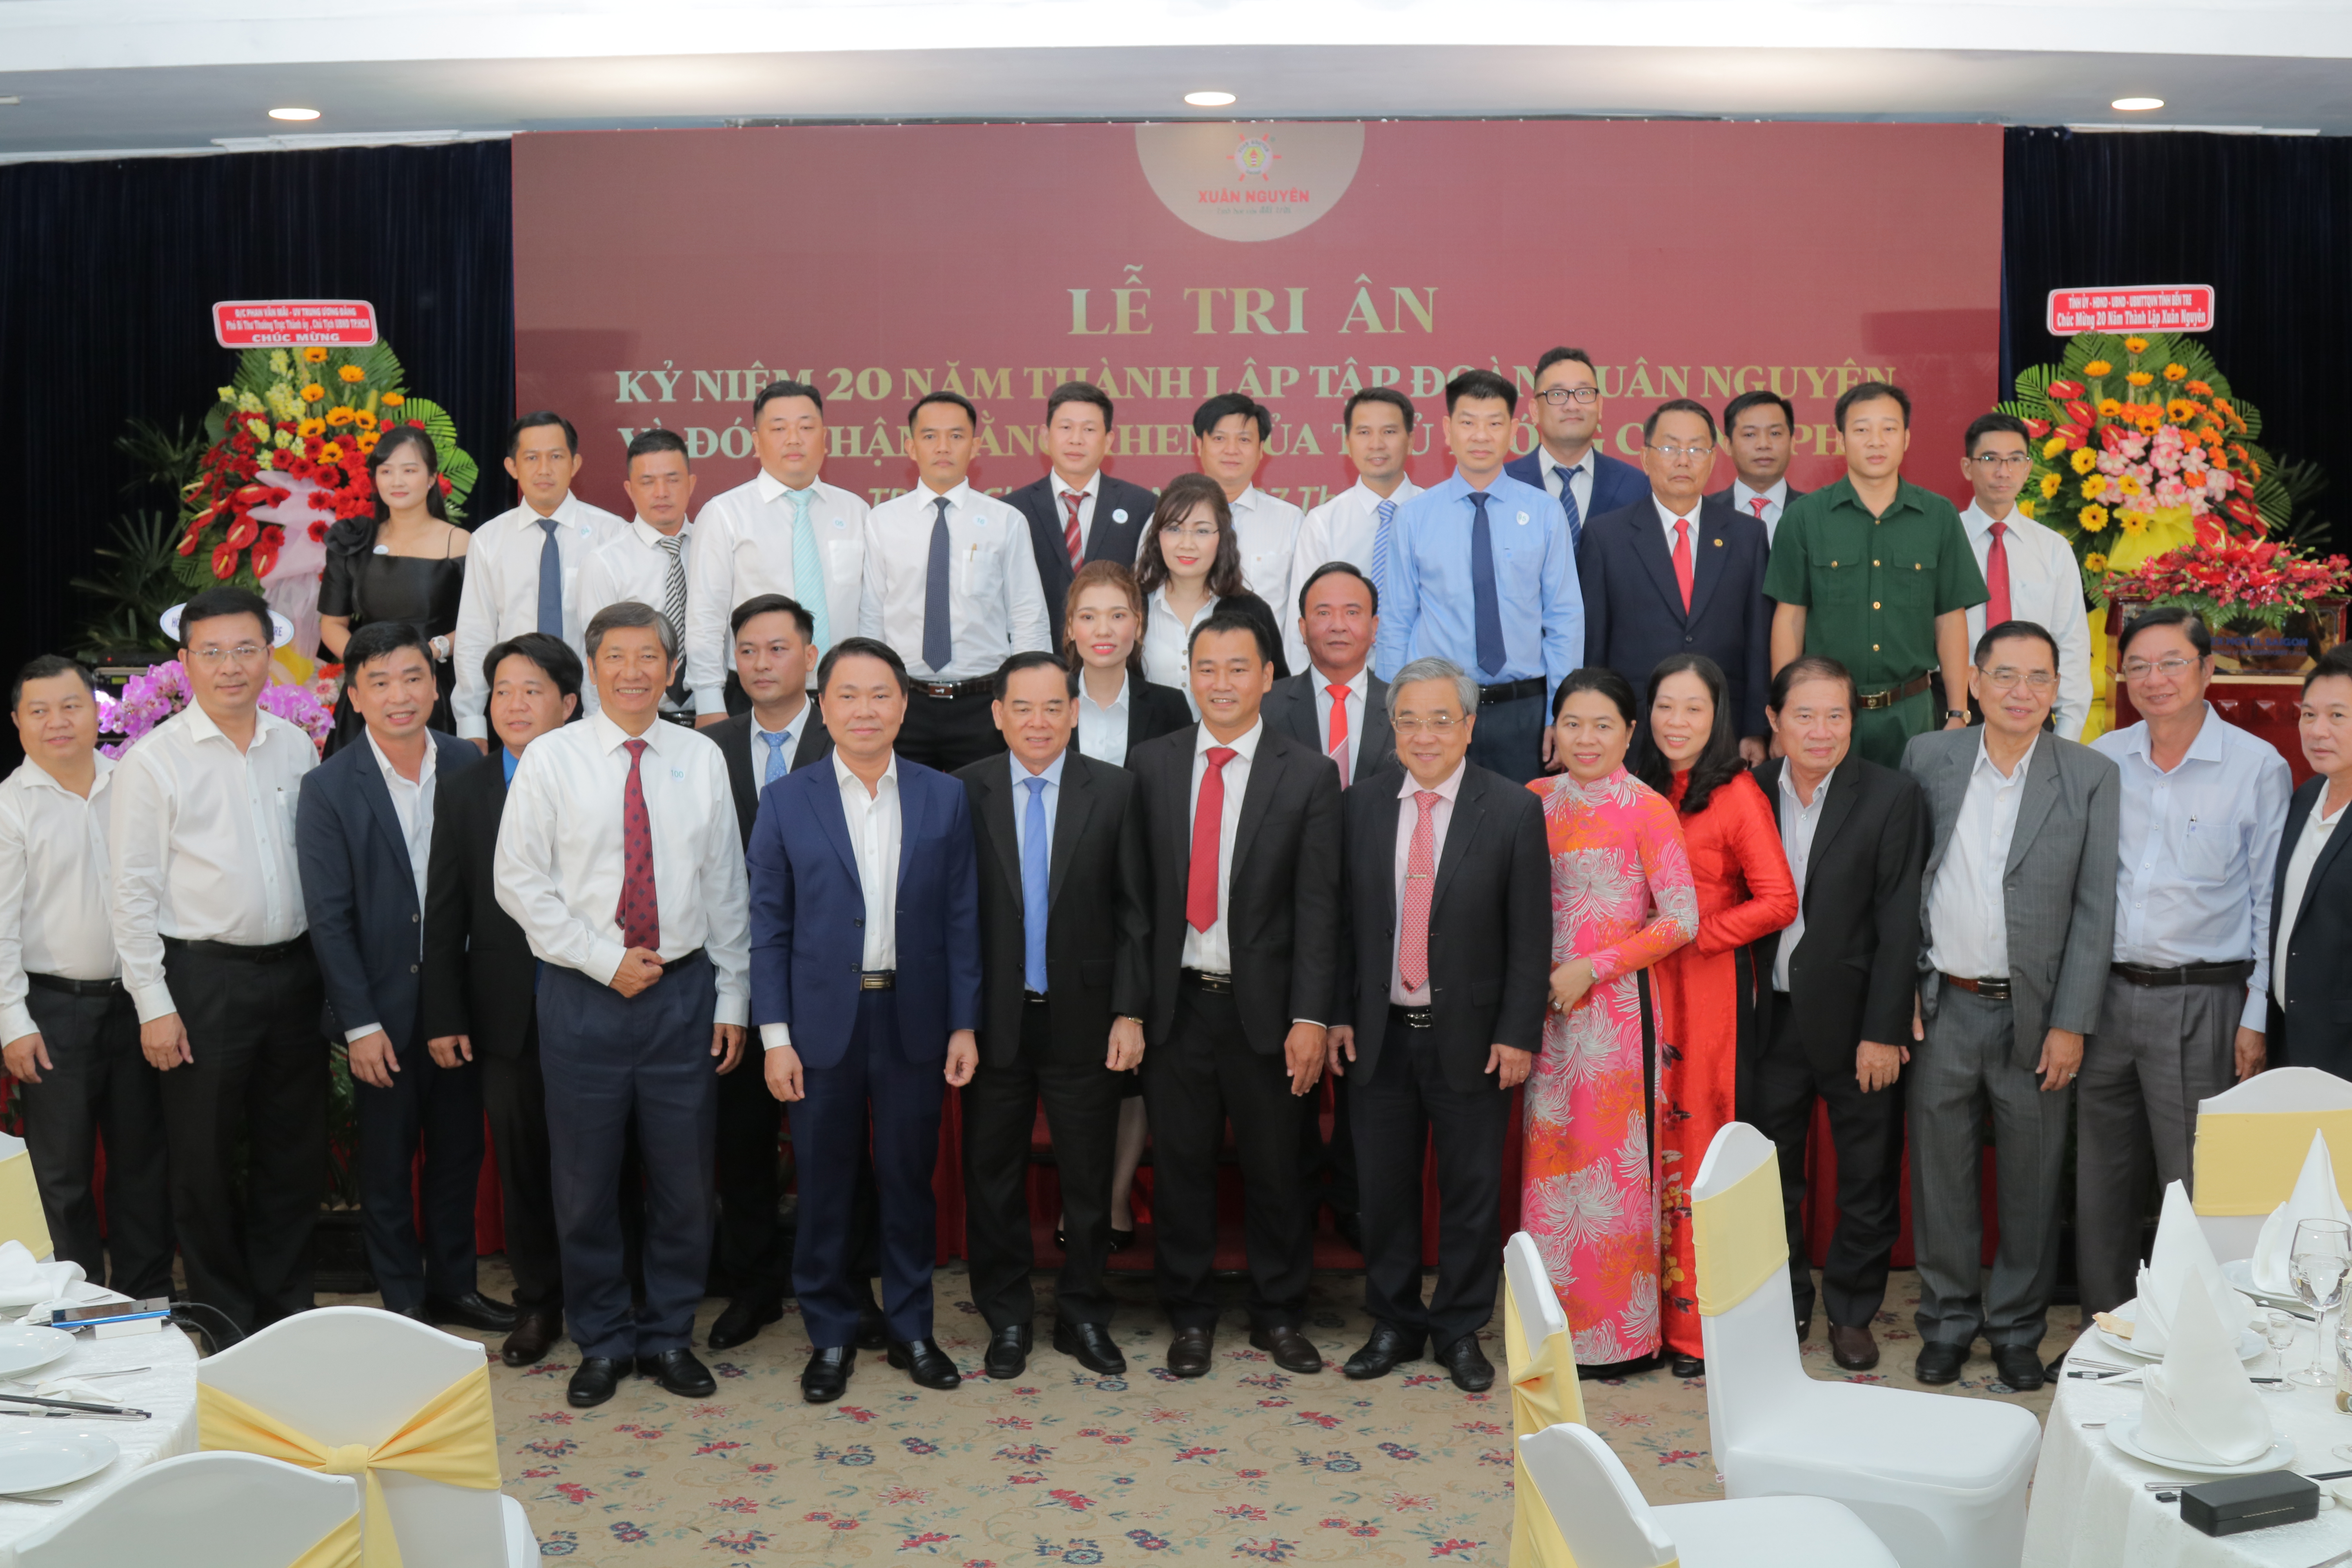 Kỷ niệm 20 năm thành lập Tập đoàn Xuân Nguyên và đón nhận bằng khen của Thủ tướng Chính phủ